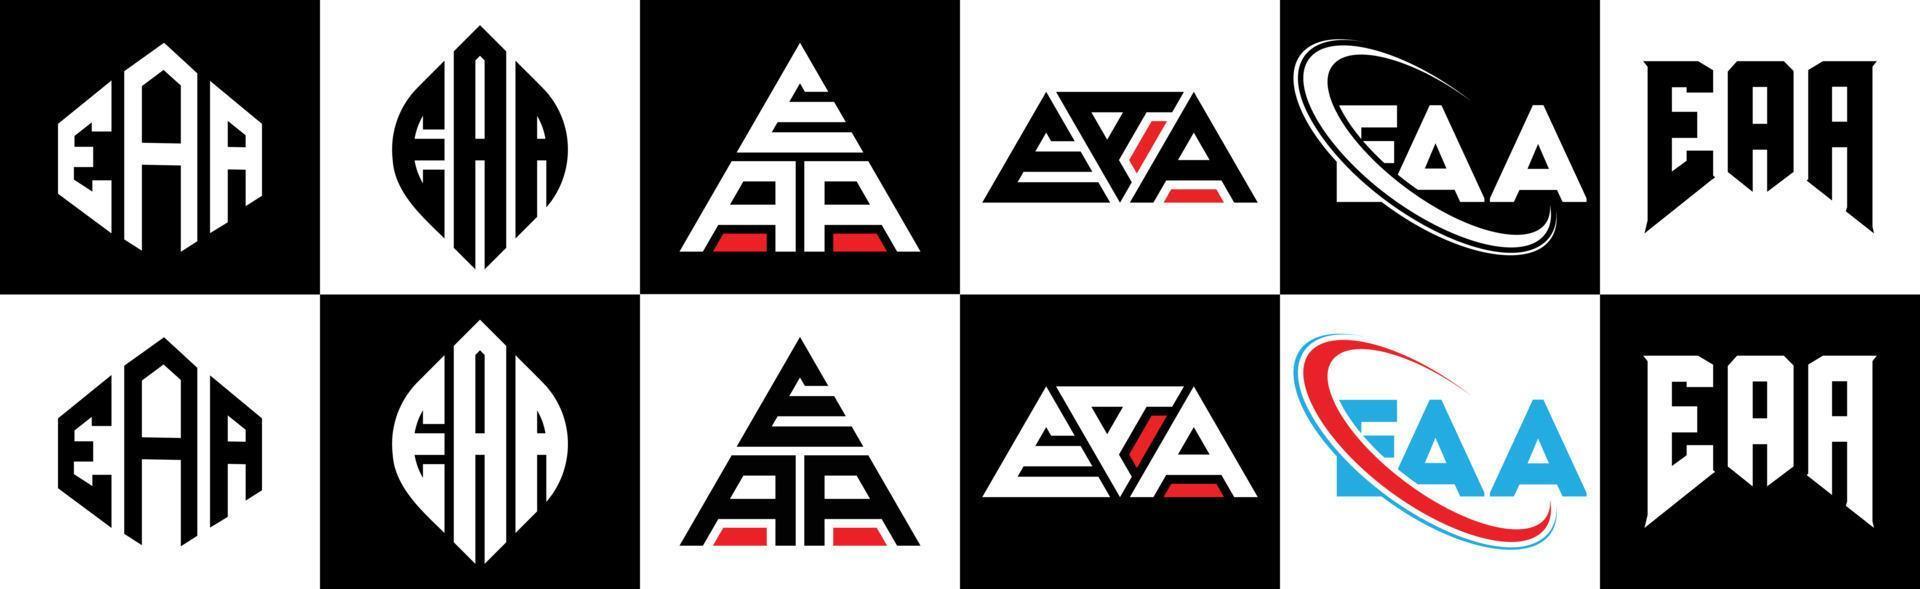 eaa-Buchstaben-Logo-Design in sechs Stilen. eaa polygon, kreis, dreieck, sechseck, flacher und einfacher stil mit schwarz-weißem buchstabenlogo in einer zeichenfläche. eaa minimalistisches und klassisches Logo vektor